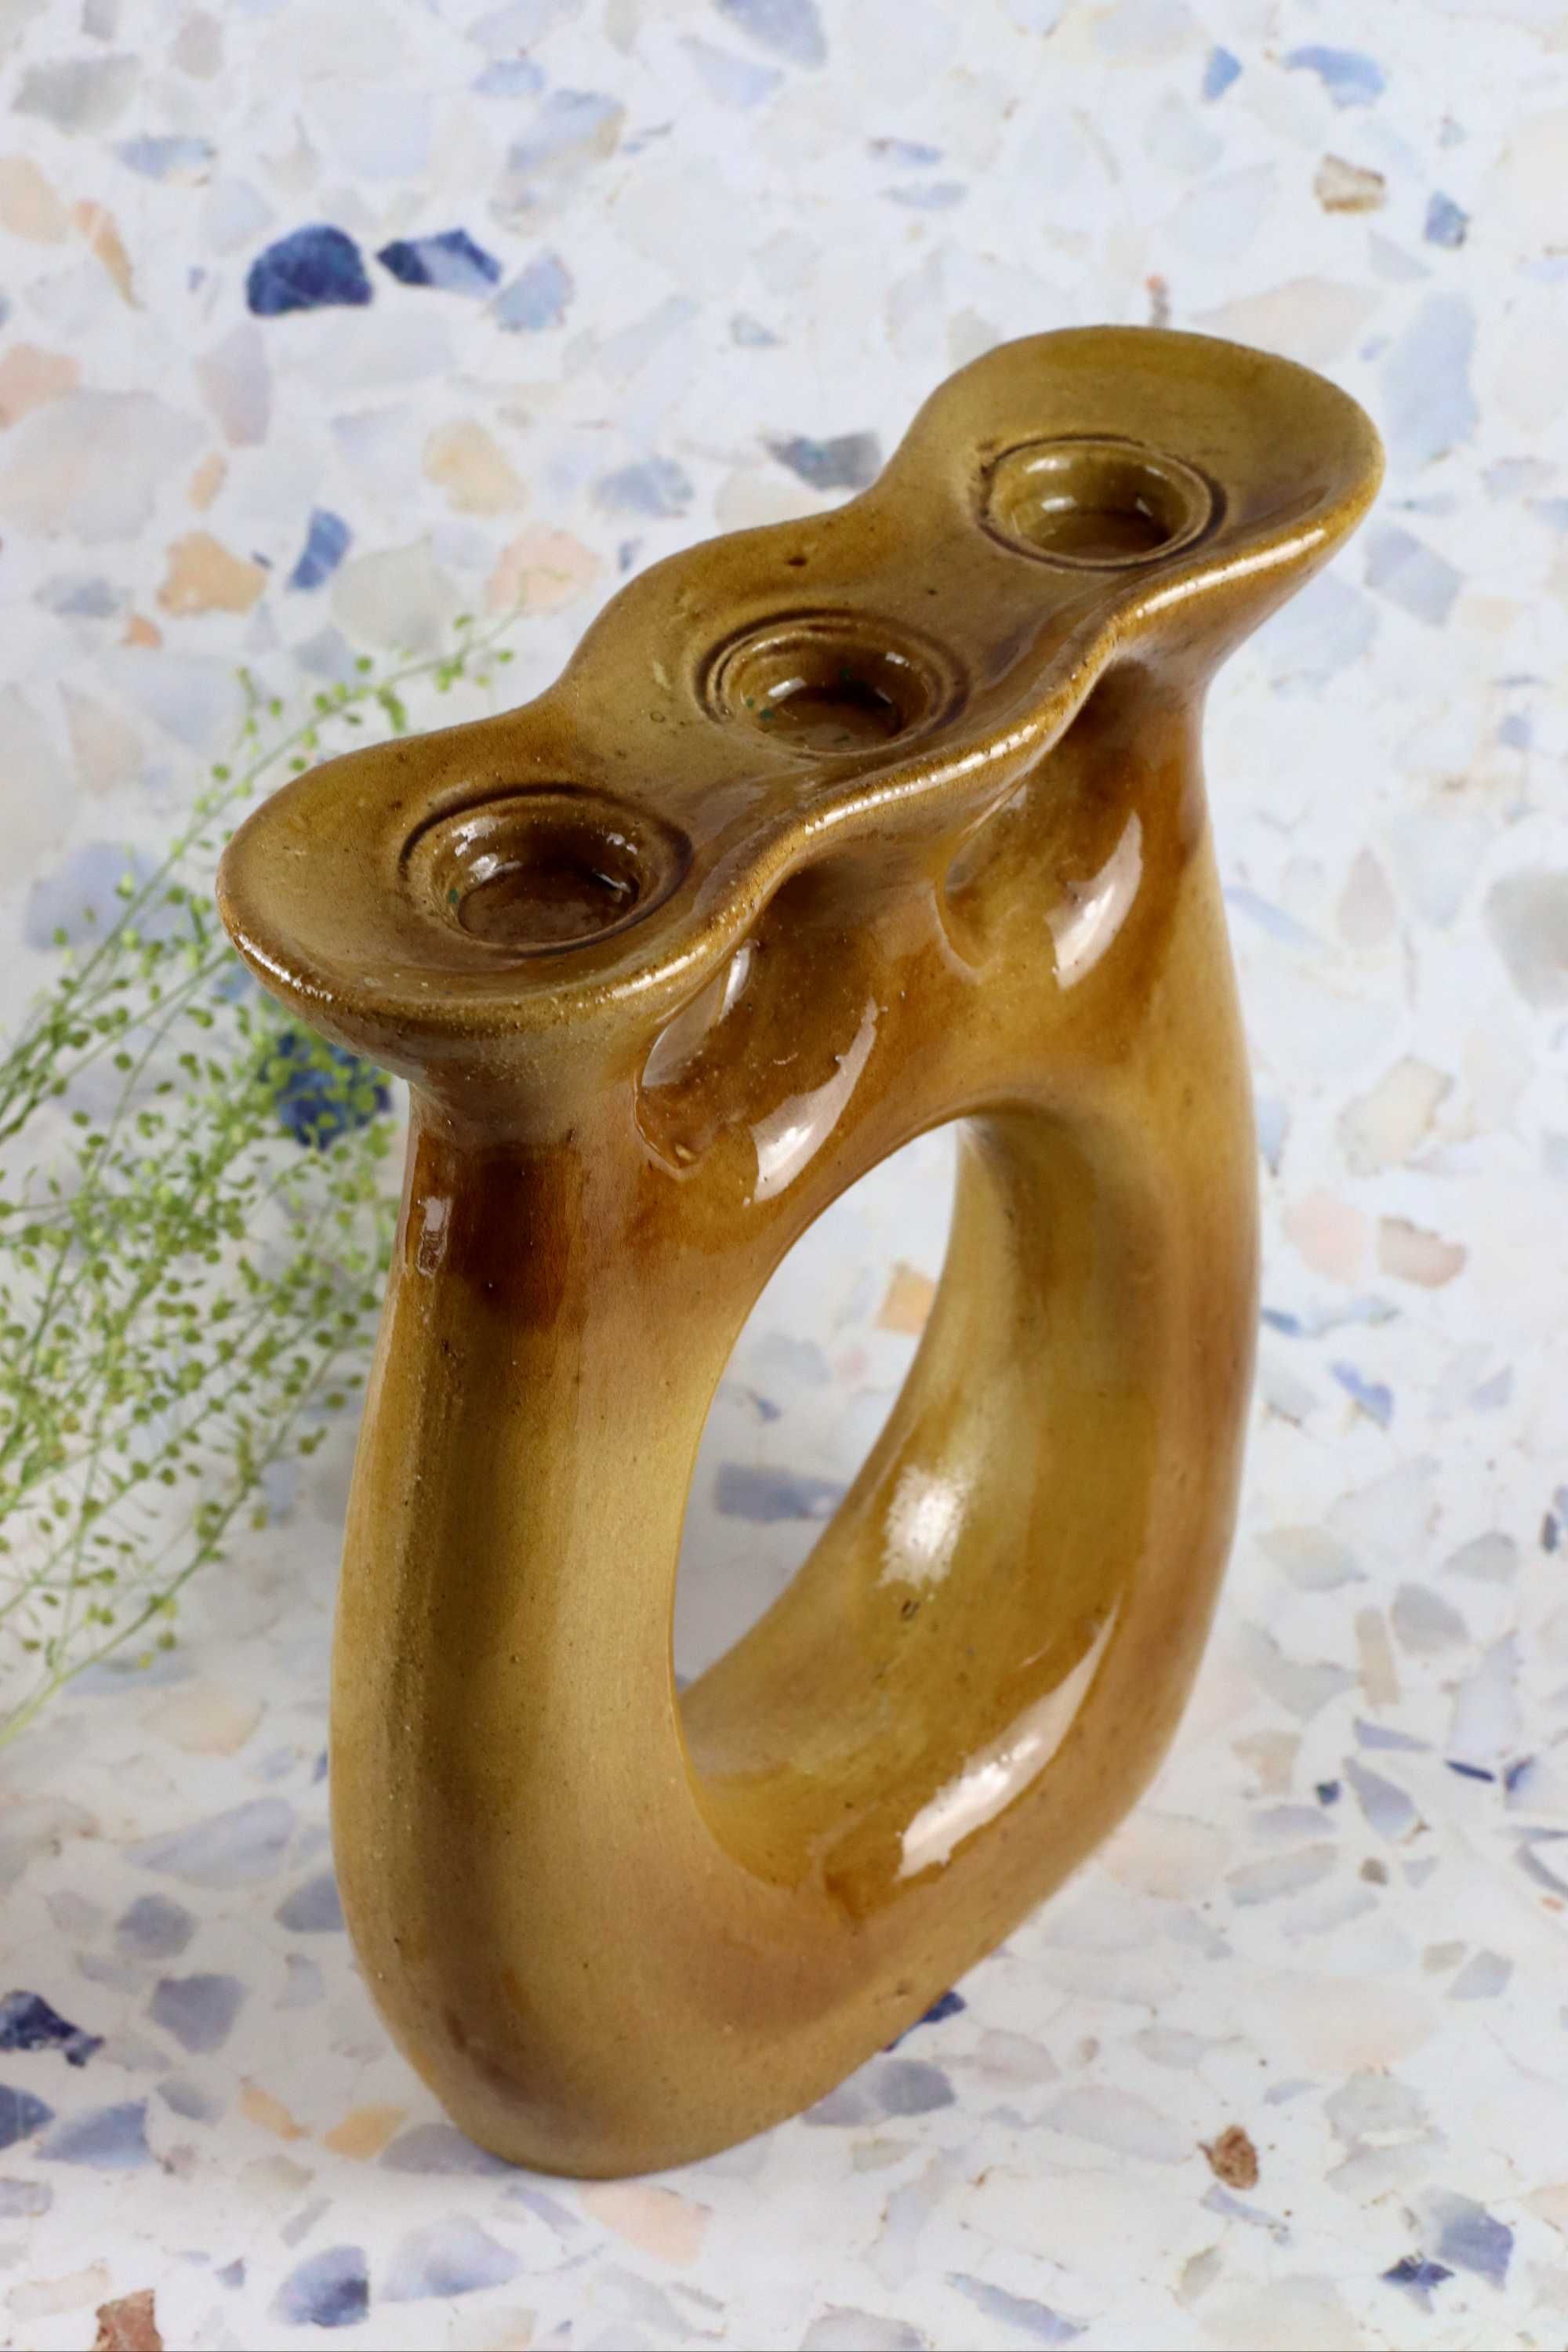 Potrójny ceramiczny świecznik jak Julian Mirostowice ceramika prl